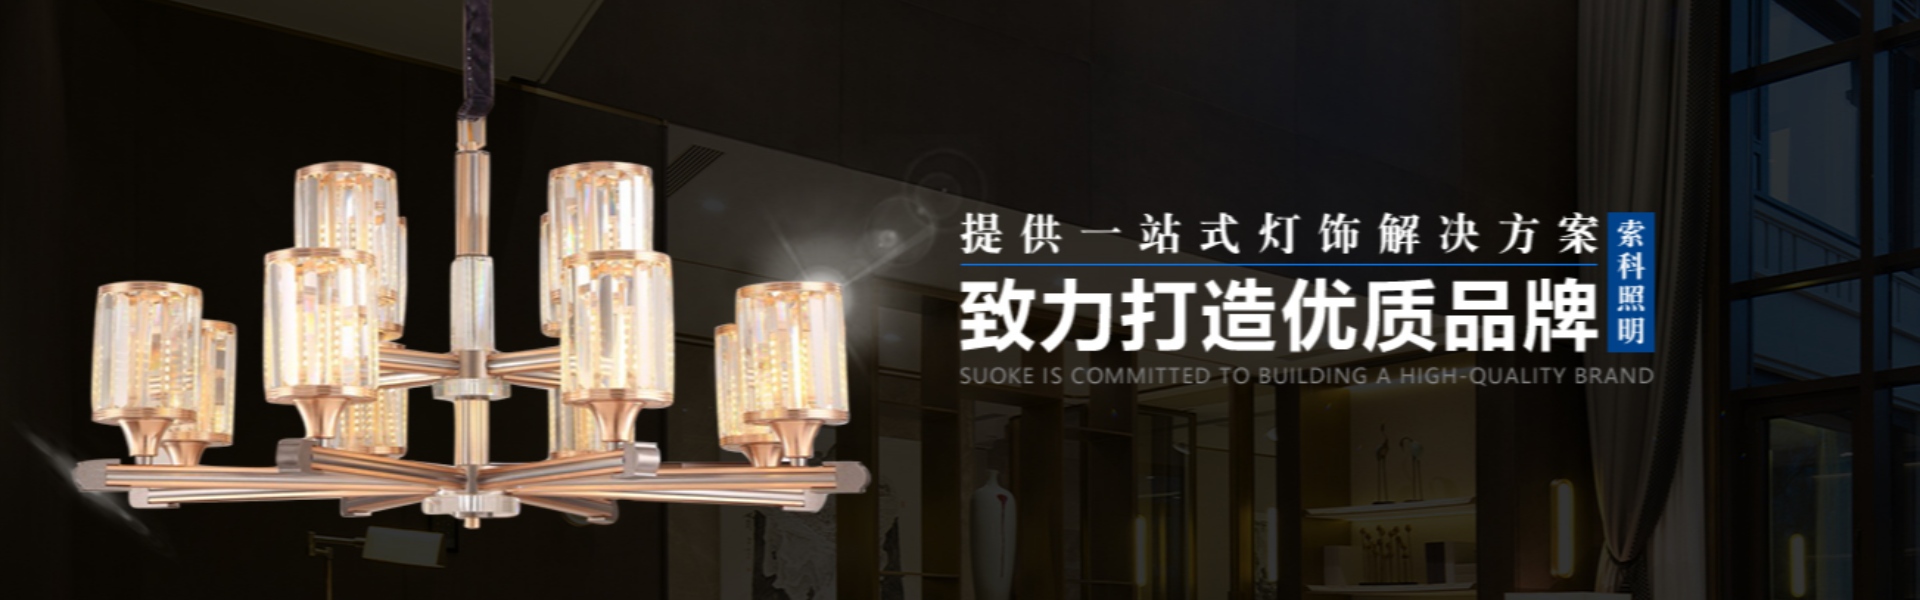 iluminação doméstica, iluminação externa, iluminação solar,Zhongshan Suoke Lighting Electric Co., Ltd.